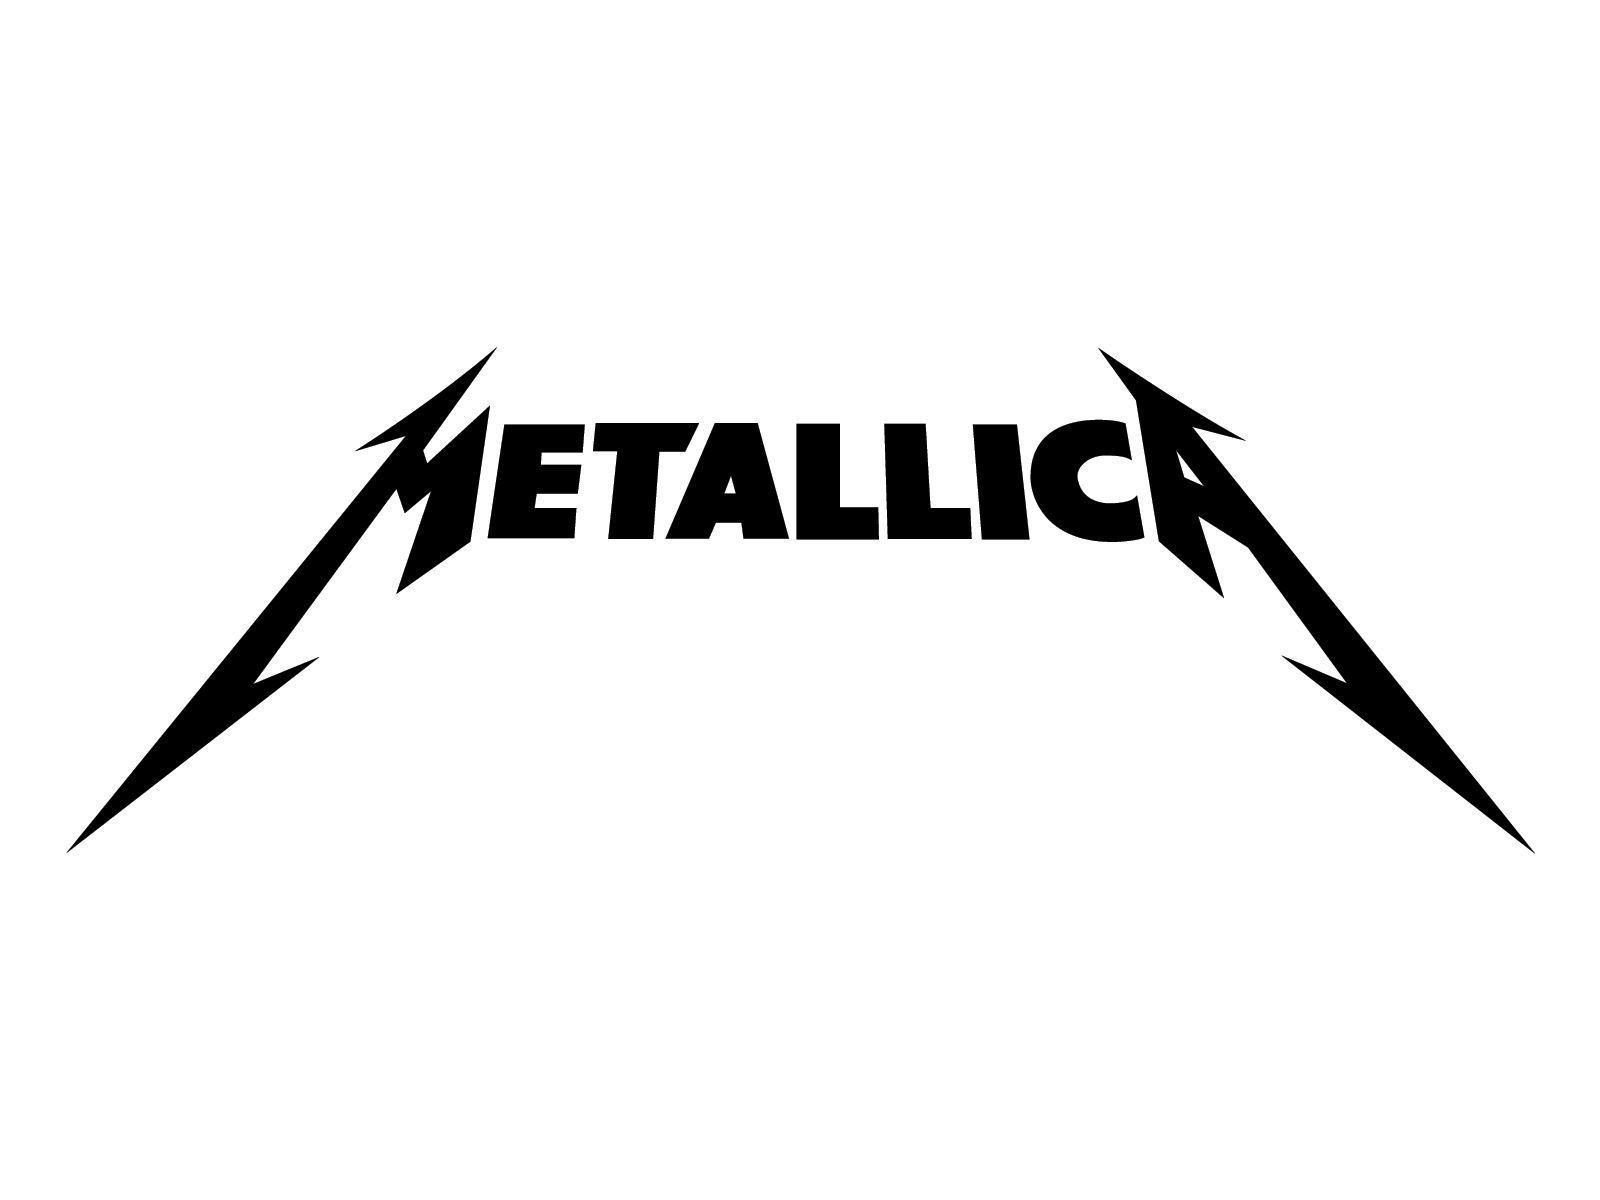 Metallica Original Logo - Image result for metallica logo. Metallica. Metallica, Band logos